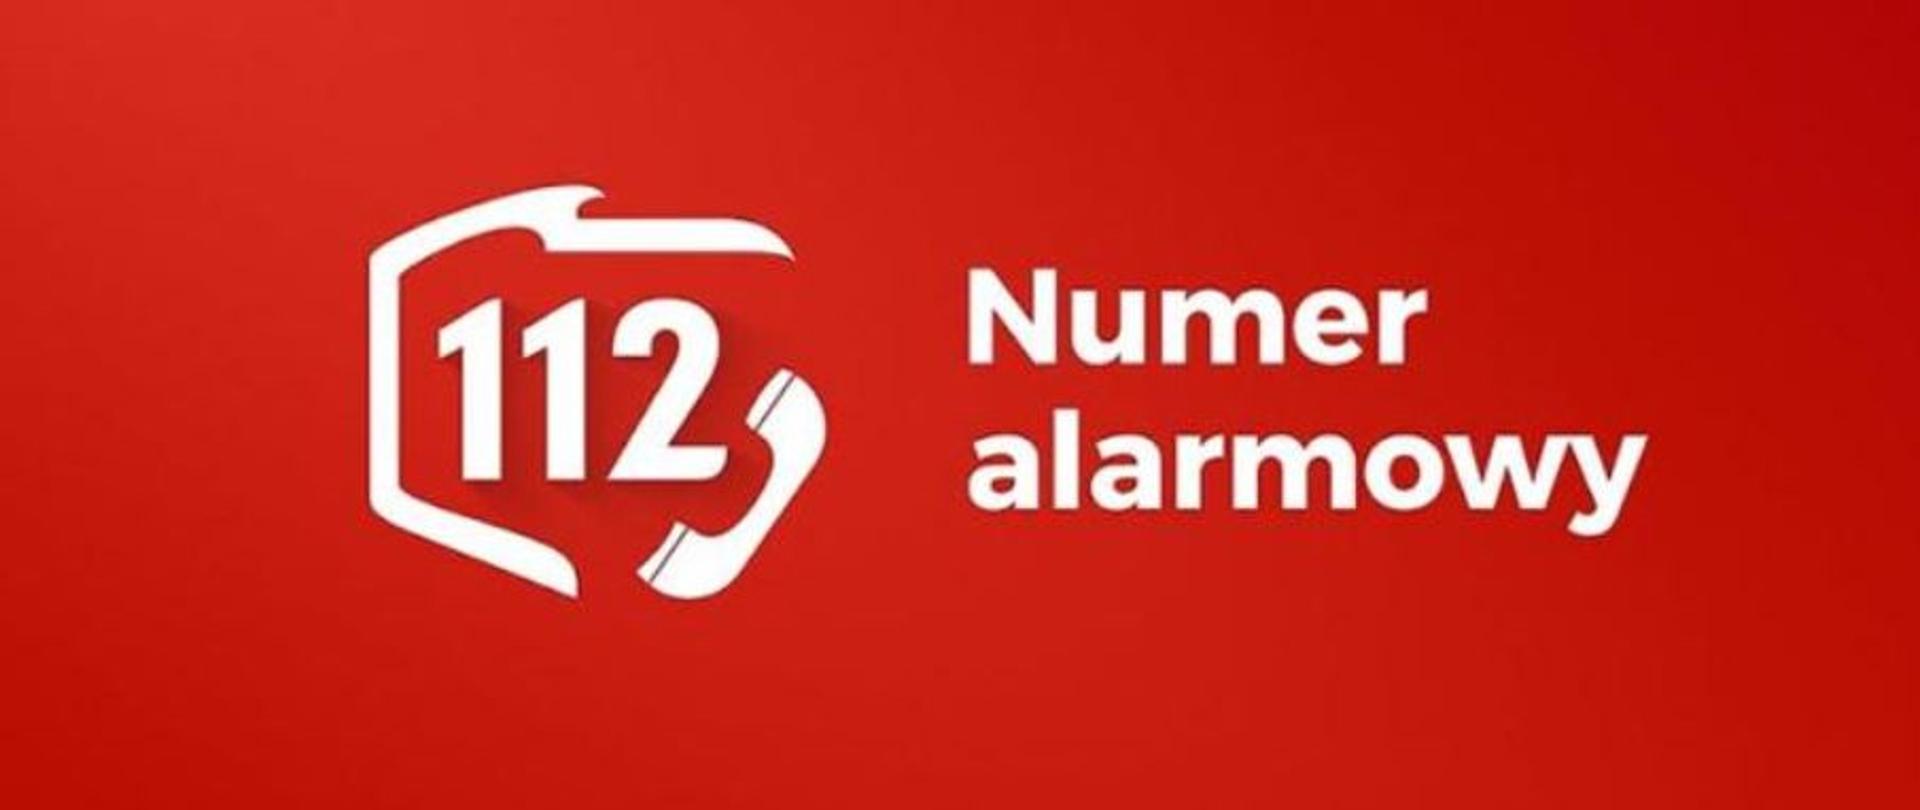 Zdjęcie przedstawia napis numer alarmowy oraz numer 112 na czerwonym tle. Numer telefonu 112 znajduje się w obwódce przypominającej kształt terytorium RP, a w prawym dolnym roku numeru 112 znajduje się słuchawka telefoniczna.